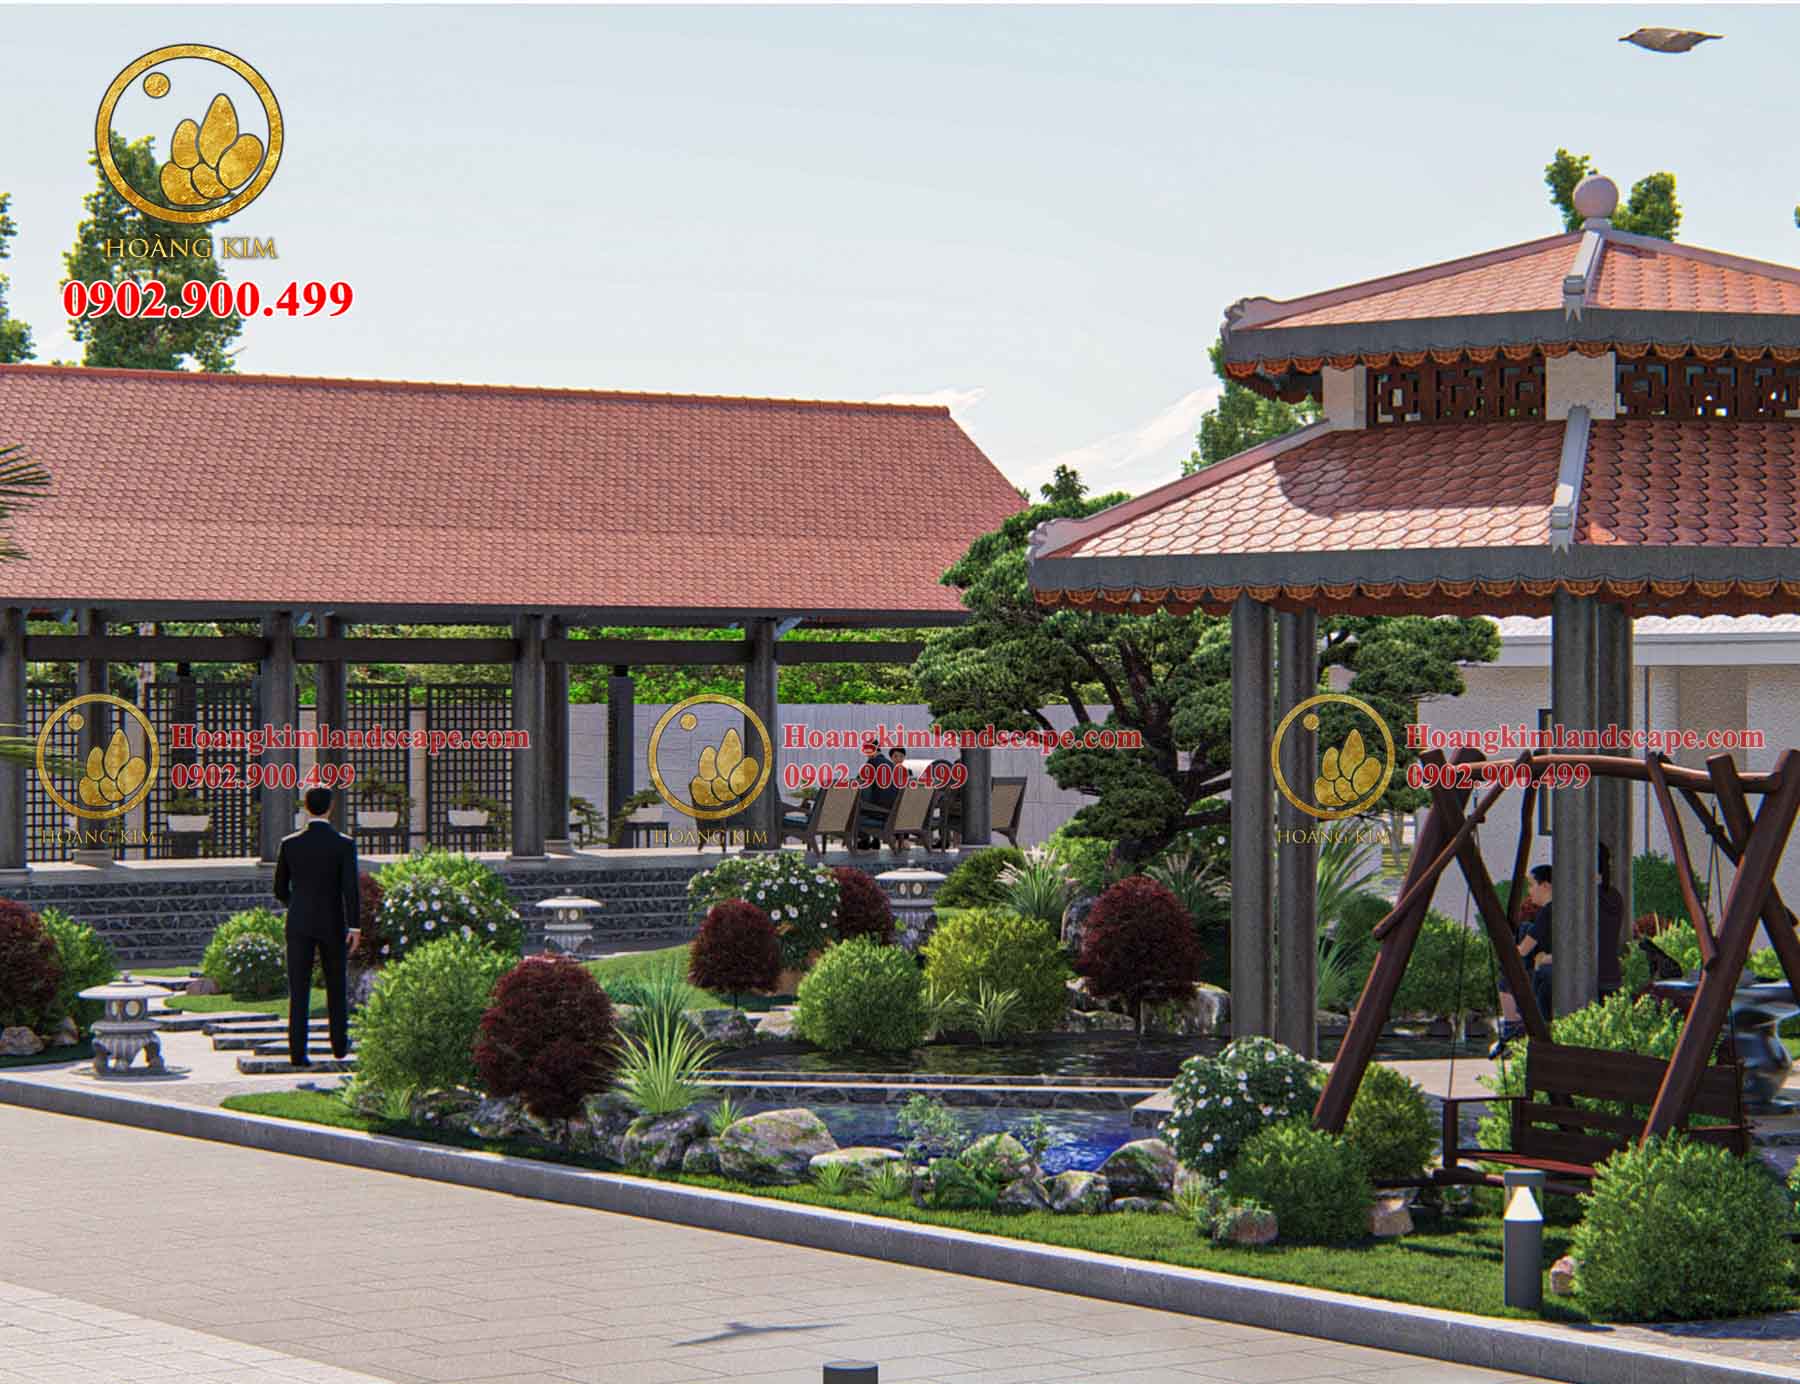 Dự án sân vườn biệt thự Anh Lộc (Quận 9 - TP. Hồ Chí Minh) 